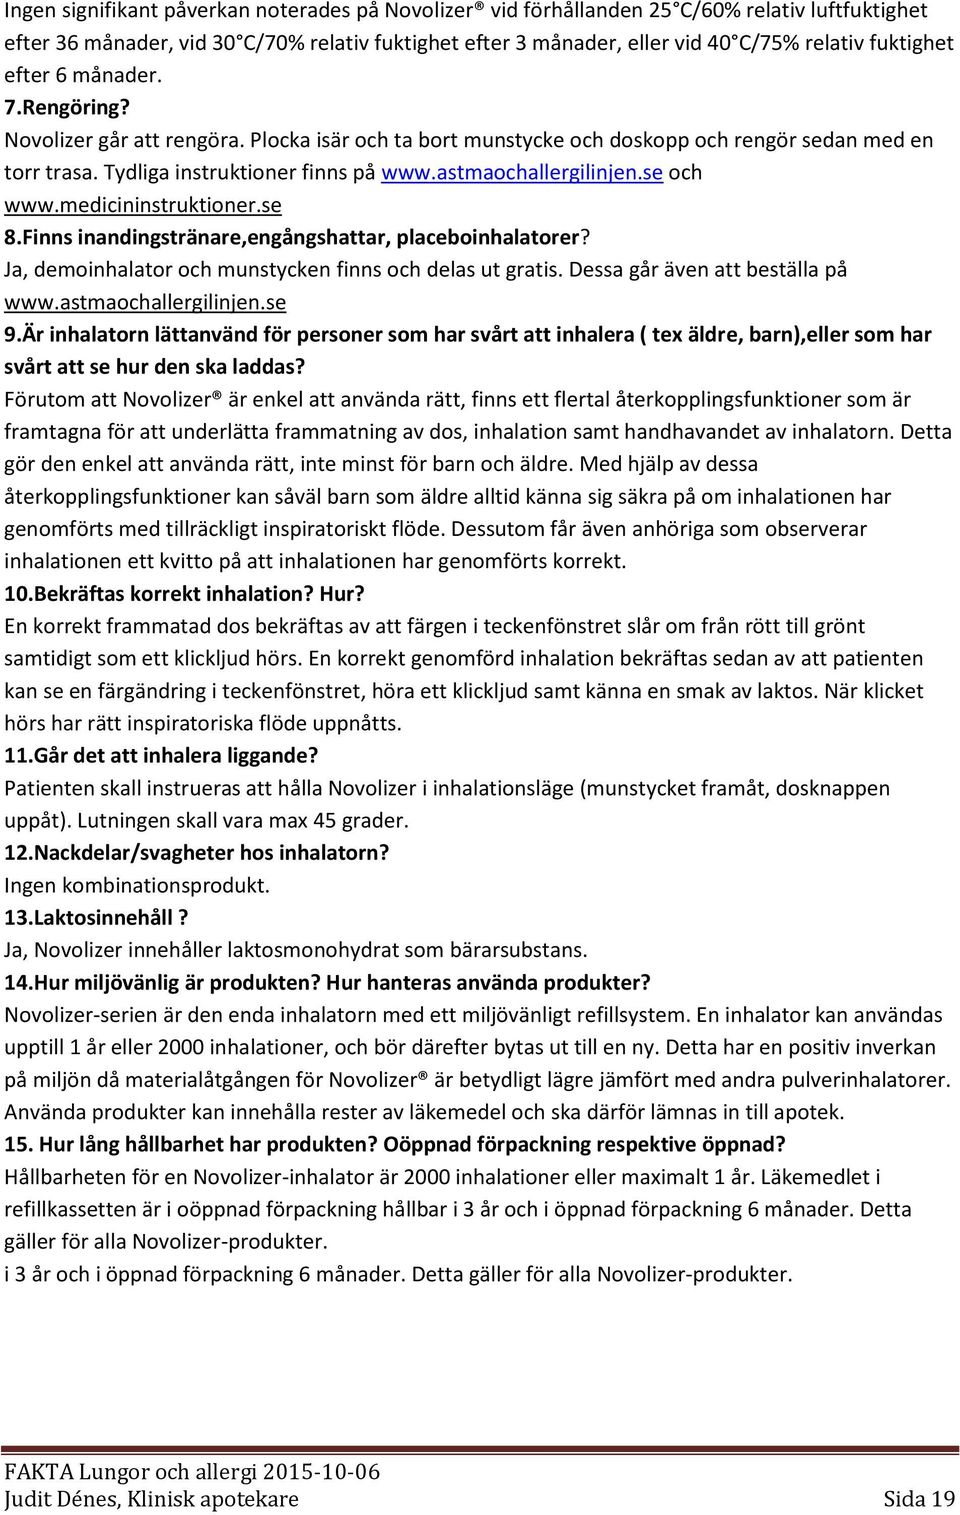 astmaochallergilinjen.se och www.medicininstruktioner.se 8.Finns inandingstränare,engångshattar, placeboinhalatorer? Ja, demoinhalator och munstycken finns och delas ut gratis.